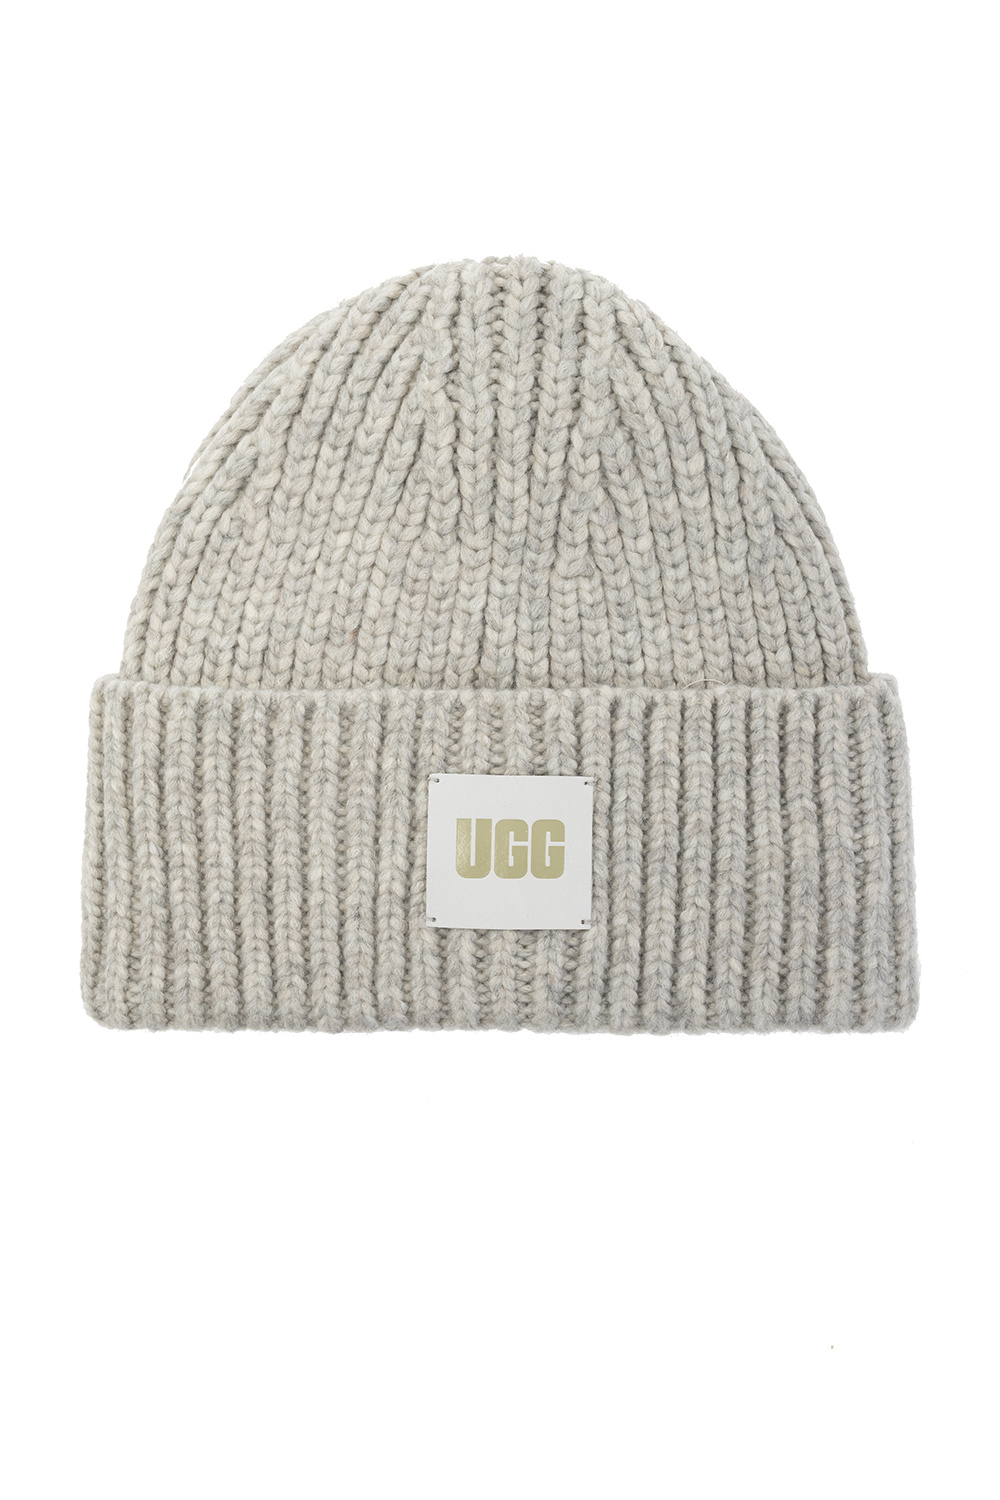 UGG hat eyewear white 41-5 Socks